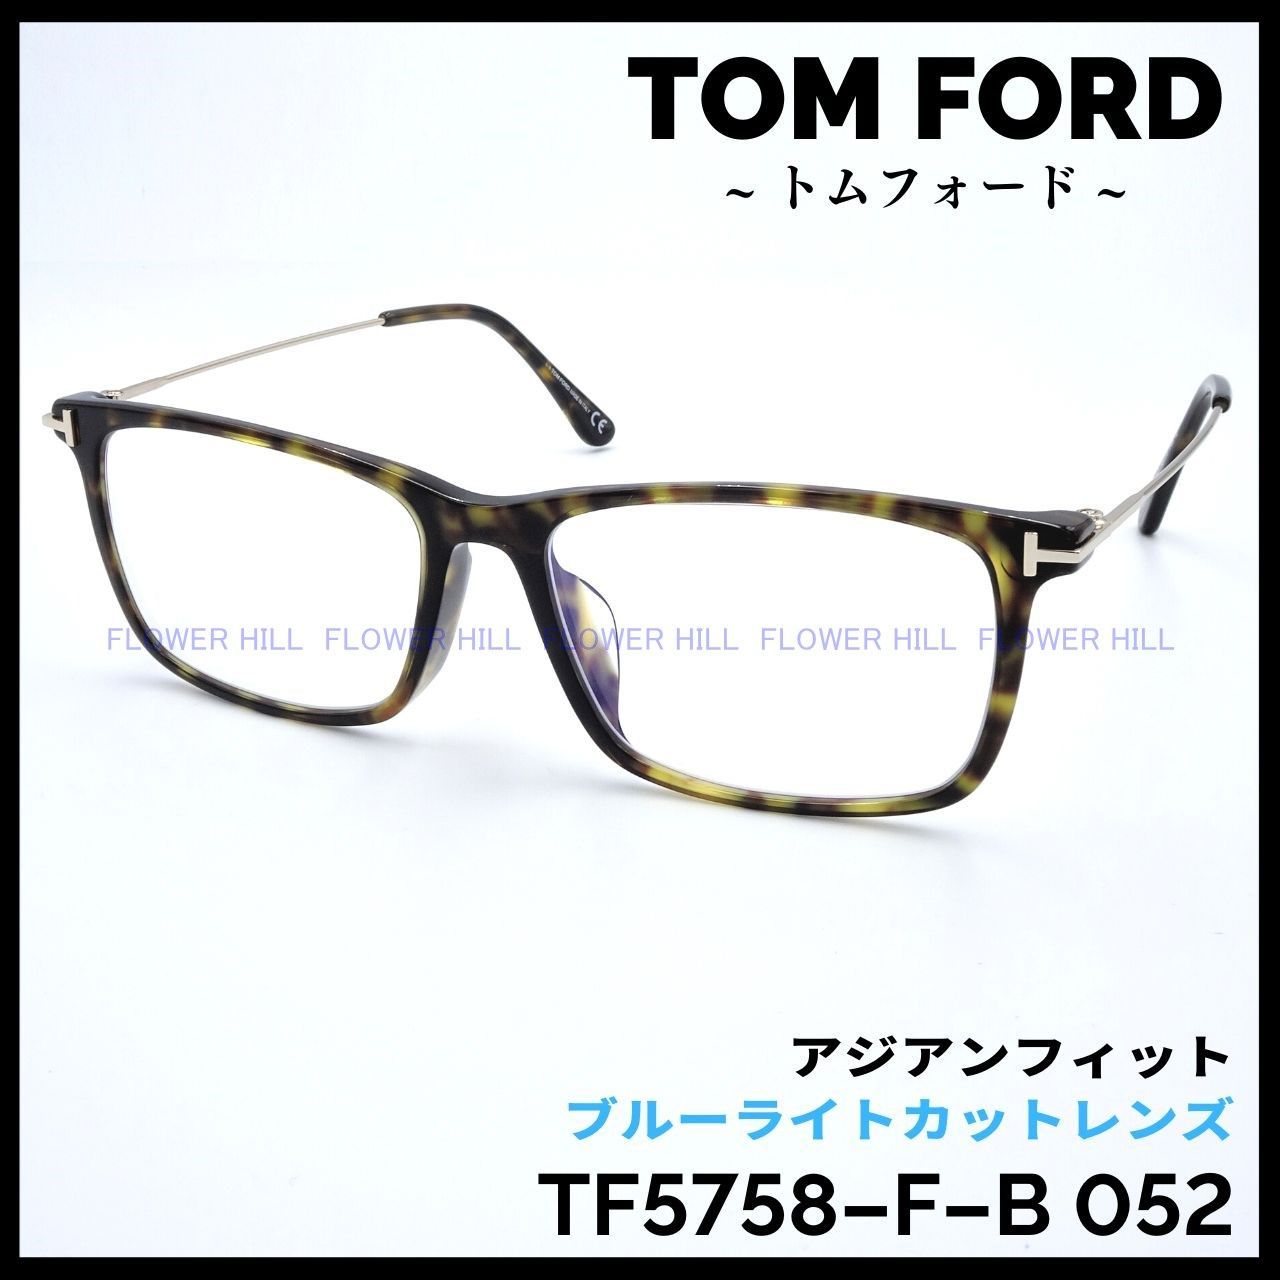 TOM FORD TF5758-F-B 052 メガネ ブルーライトカット